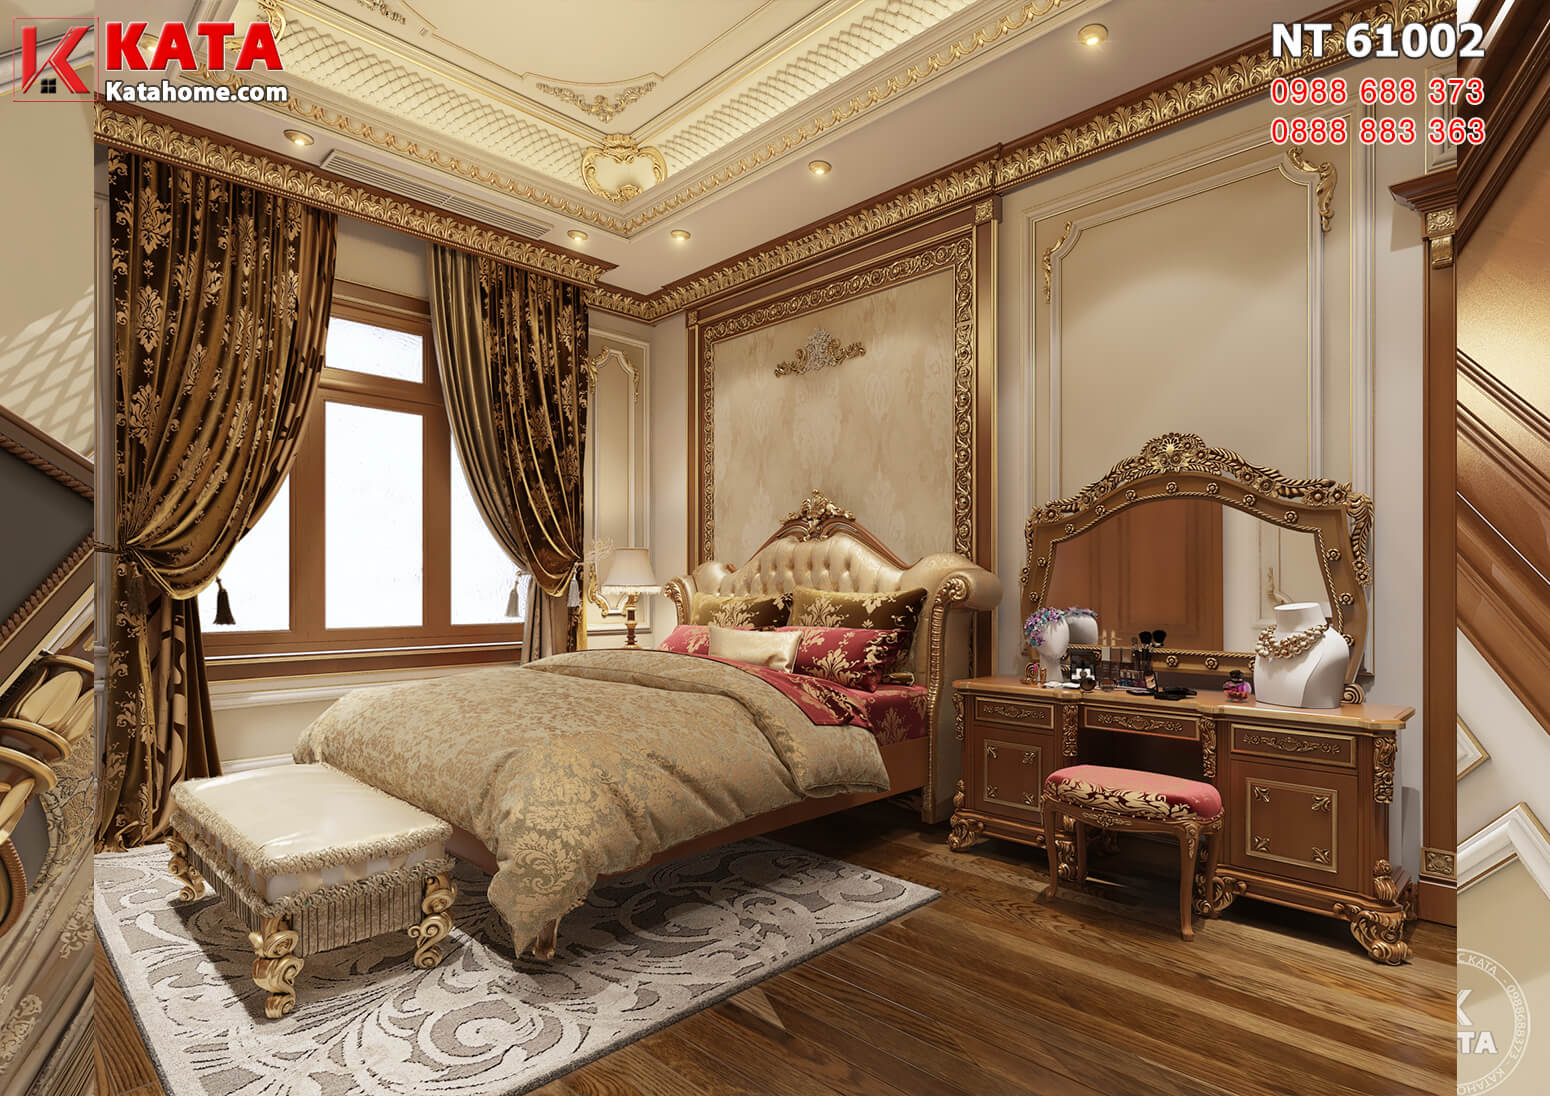 Hình ảnh: Thiết kế nội thất tân cổ điển đẹp dành cho phòng ngủ 2